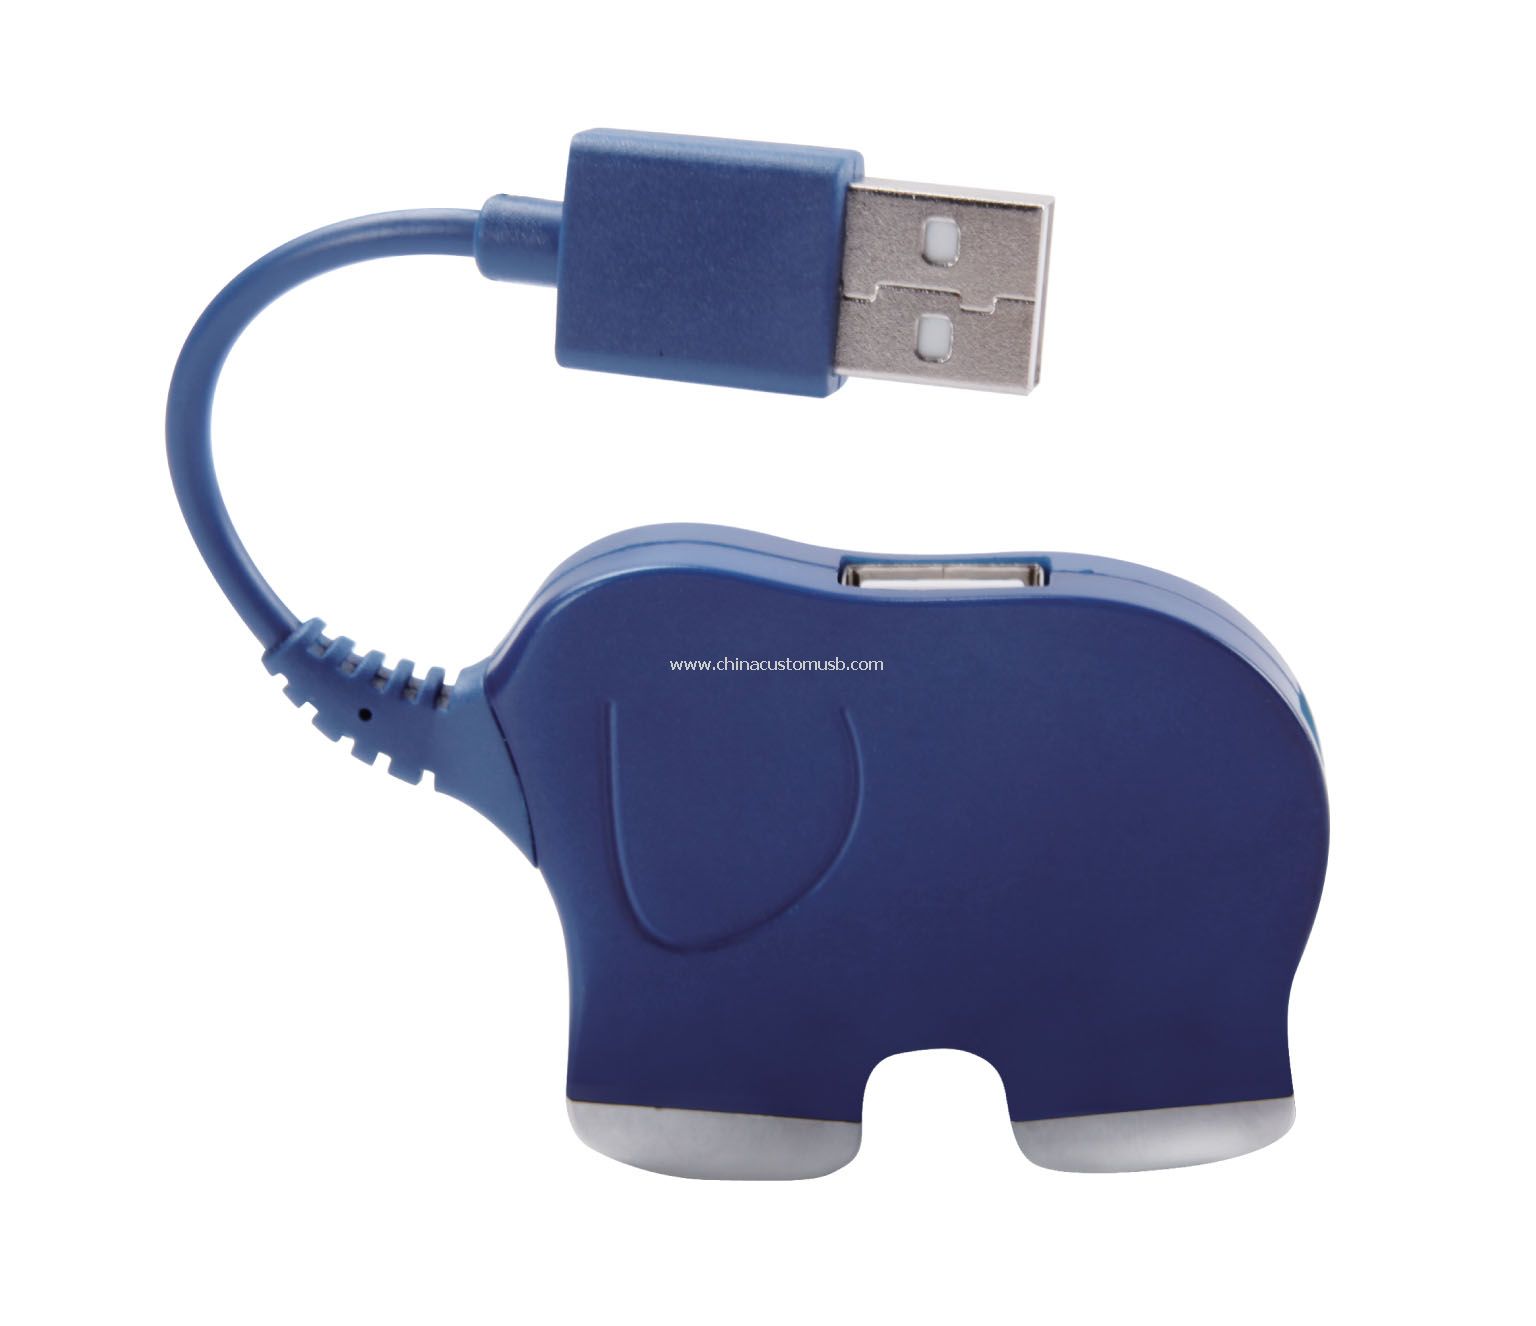 Rozbočovač USB slon